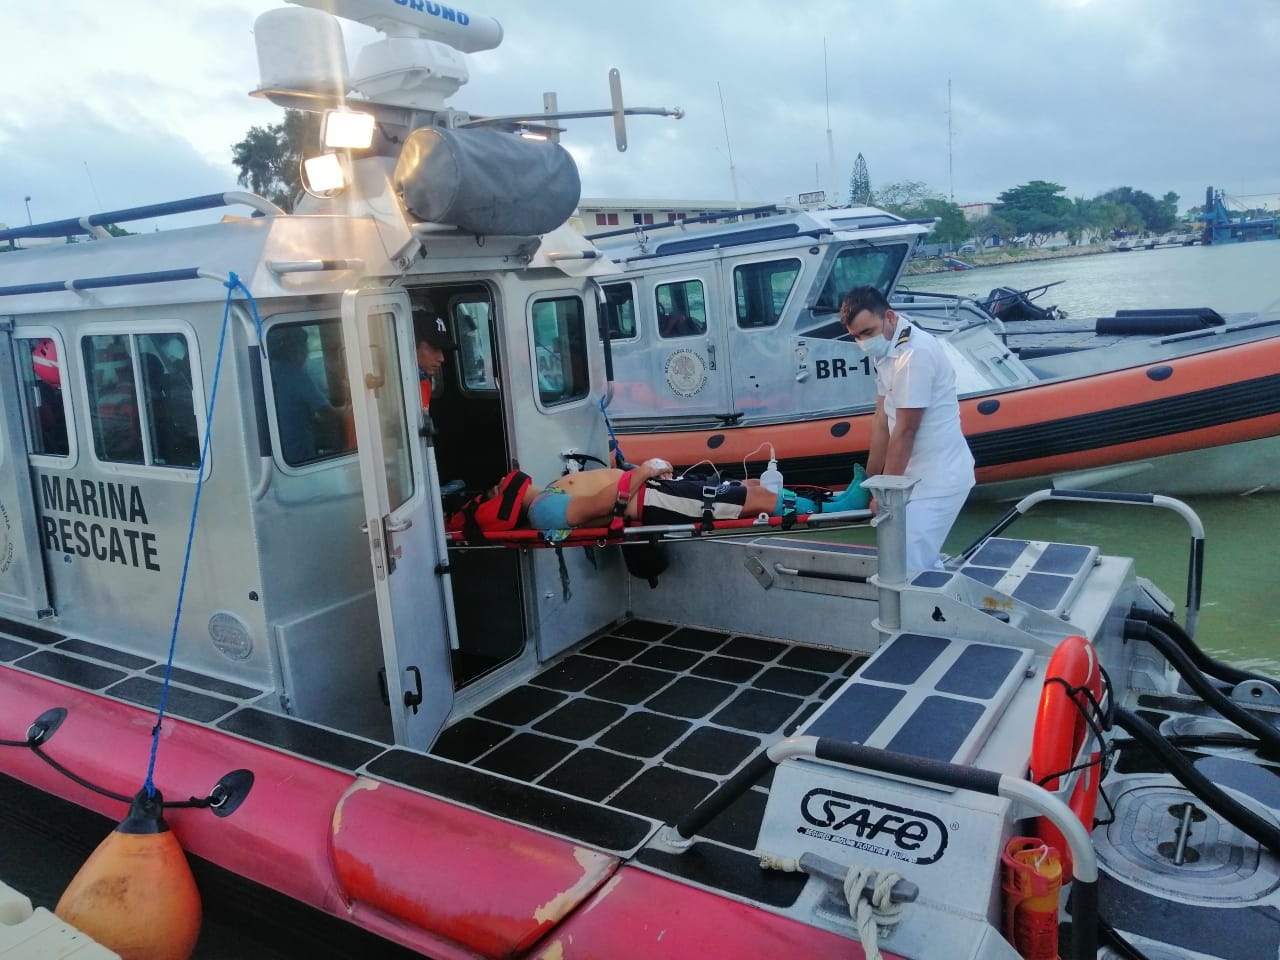 Marina rescata a pescador tras convulsionar en una embarcación en Progreso